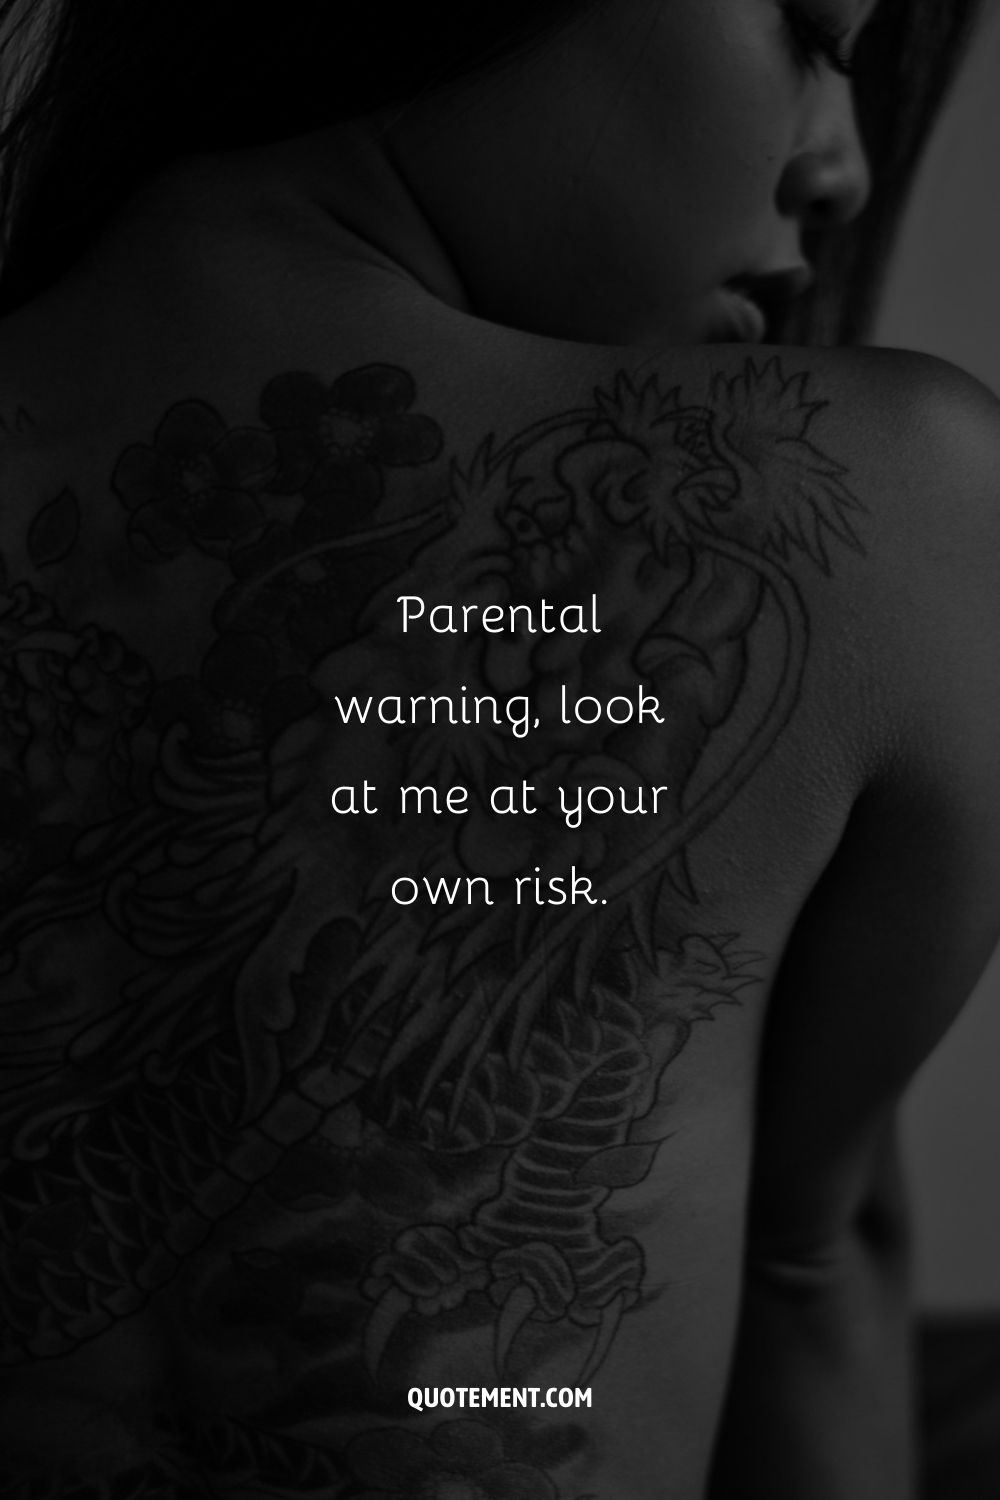 Imagen de una mujer con un tatuaje en la espalda que representa un desnudo.